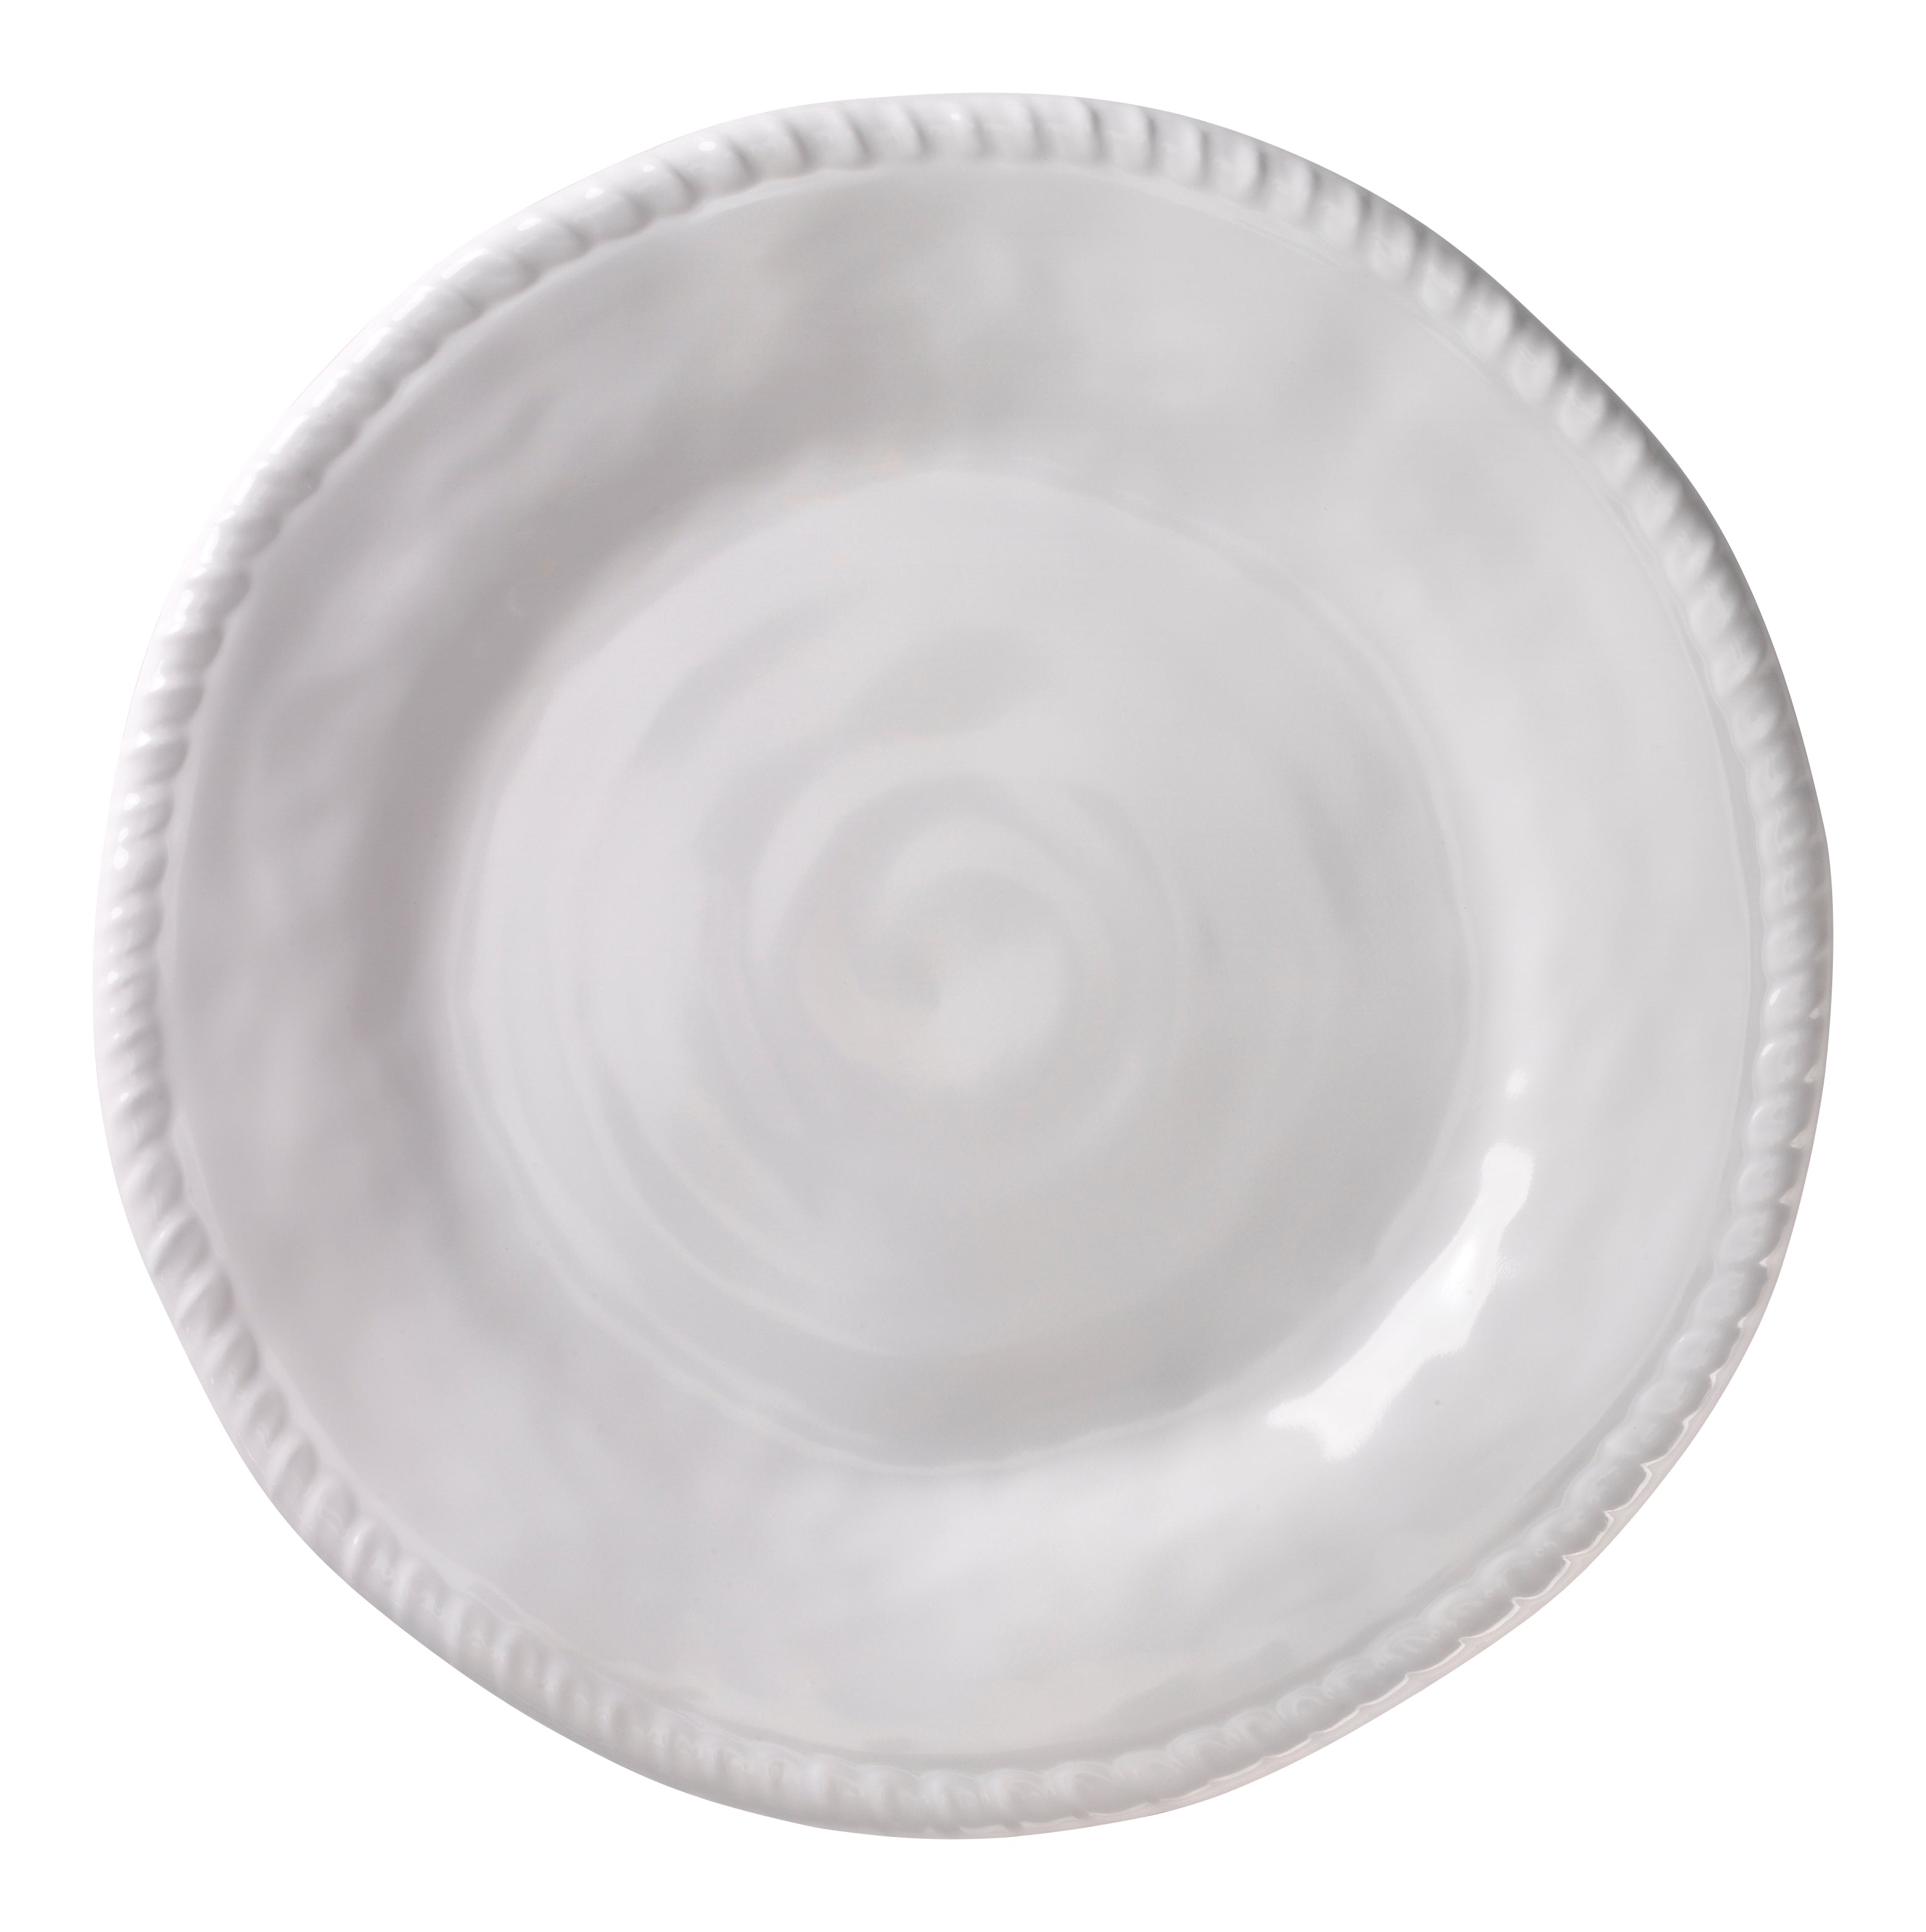 Merritt White Rope Dinnerware Collection Dinner Plate 12027787